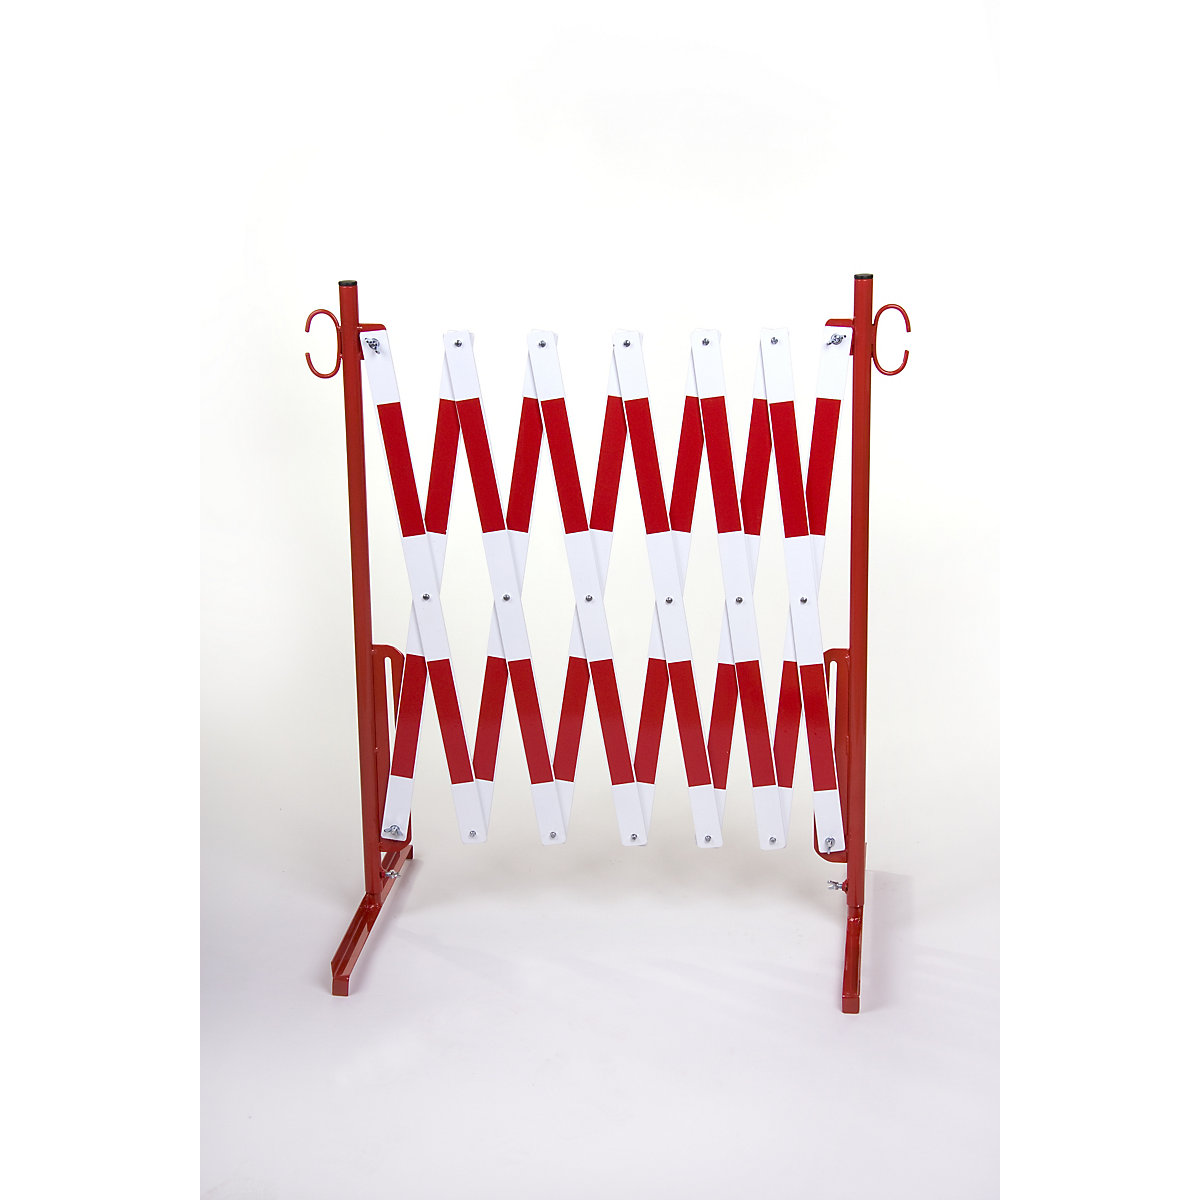 Harmonicaschaar, met 2 voeten, reflecterend, rood / wit, lengte max. 4000 mm